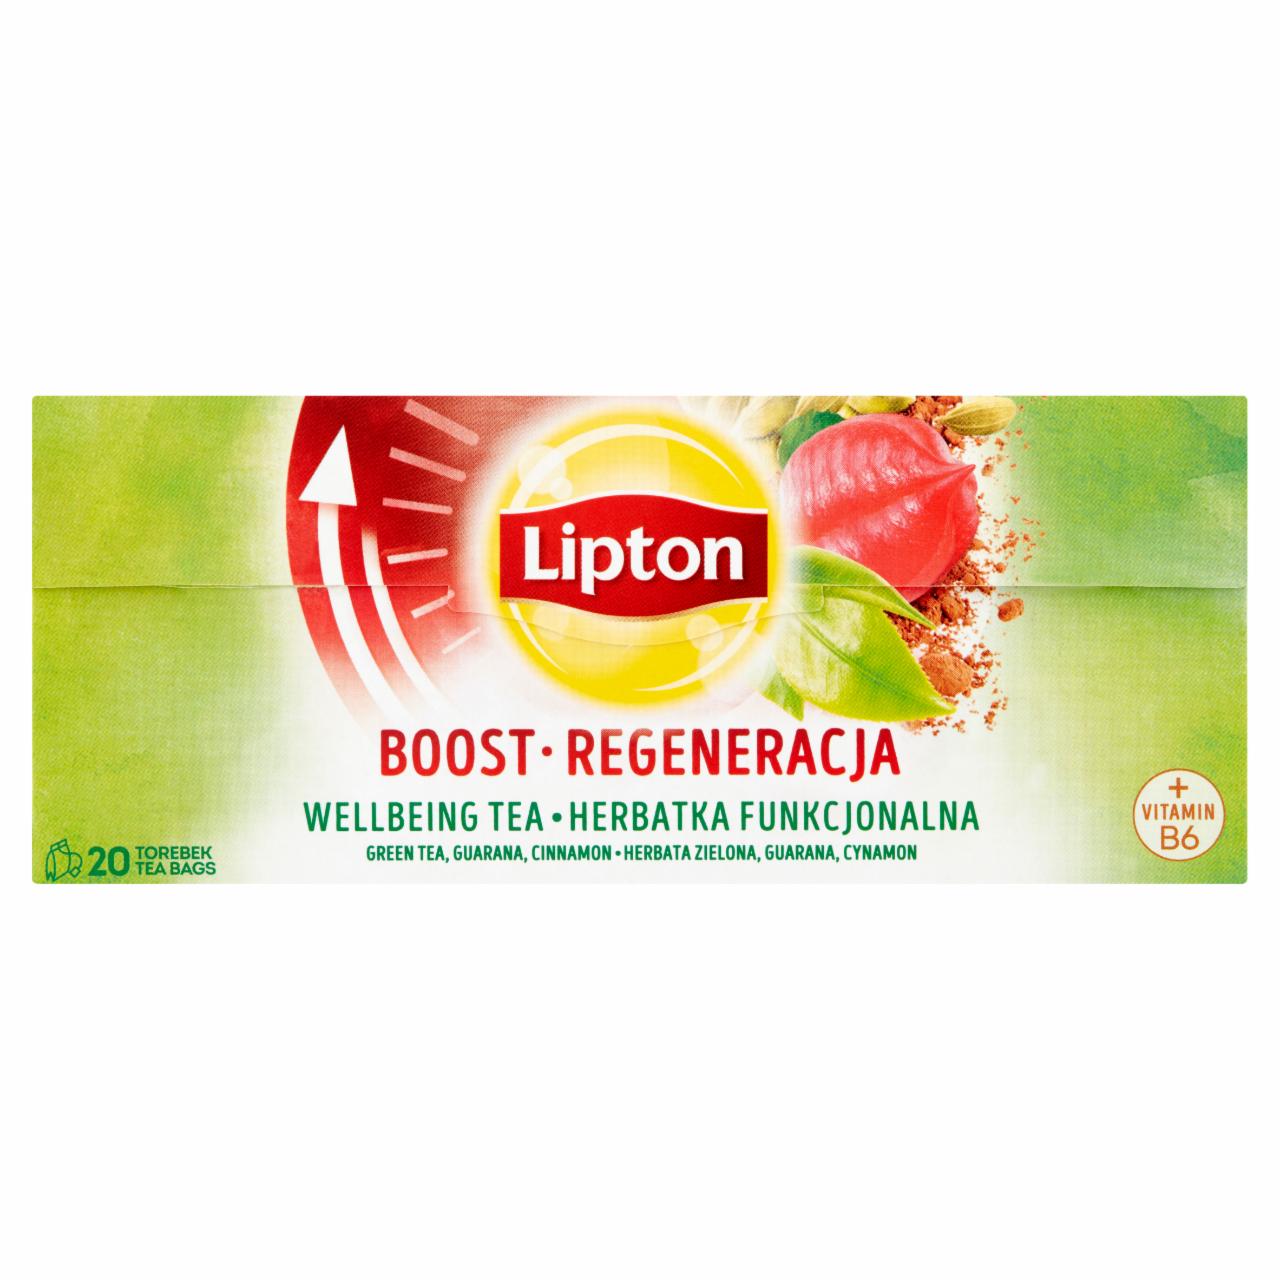 Képek - Lipton Boost ízesített zöld tea és herbatea B6-vitaminnal 20 filter